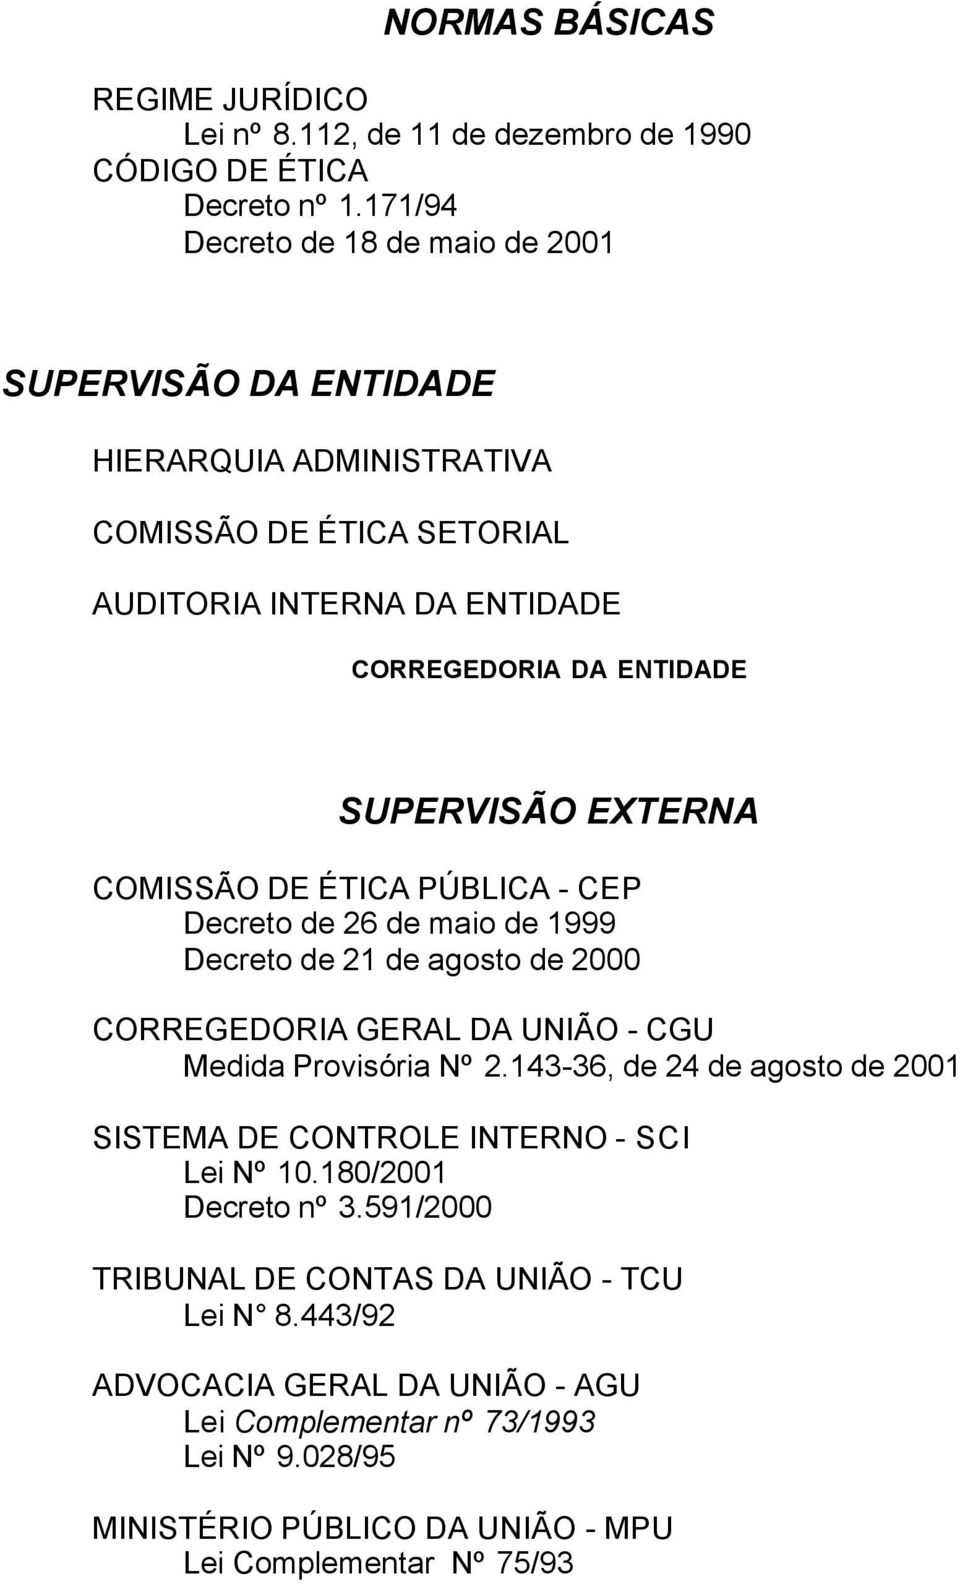 EXTERNA COMISSÃO DE ÉTICA PÚBLICA - CEP Decreto de 26 de maio de 1999 Decreto de 21 de agosto de 2000 CORREGEDORIA GERAL DA UNIÃO - CGU Medida Provisória Nº 2.